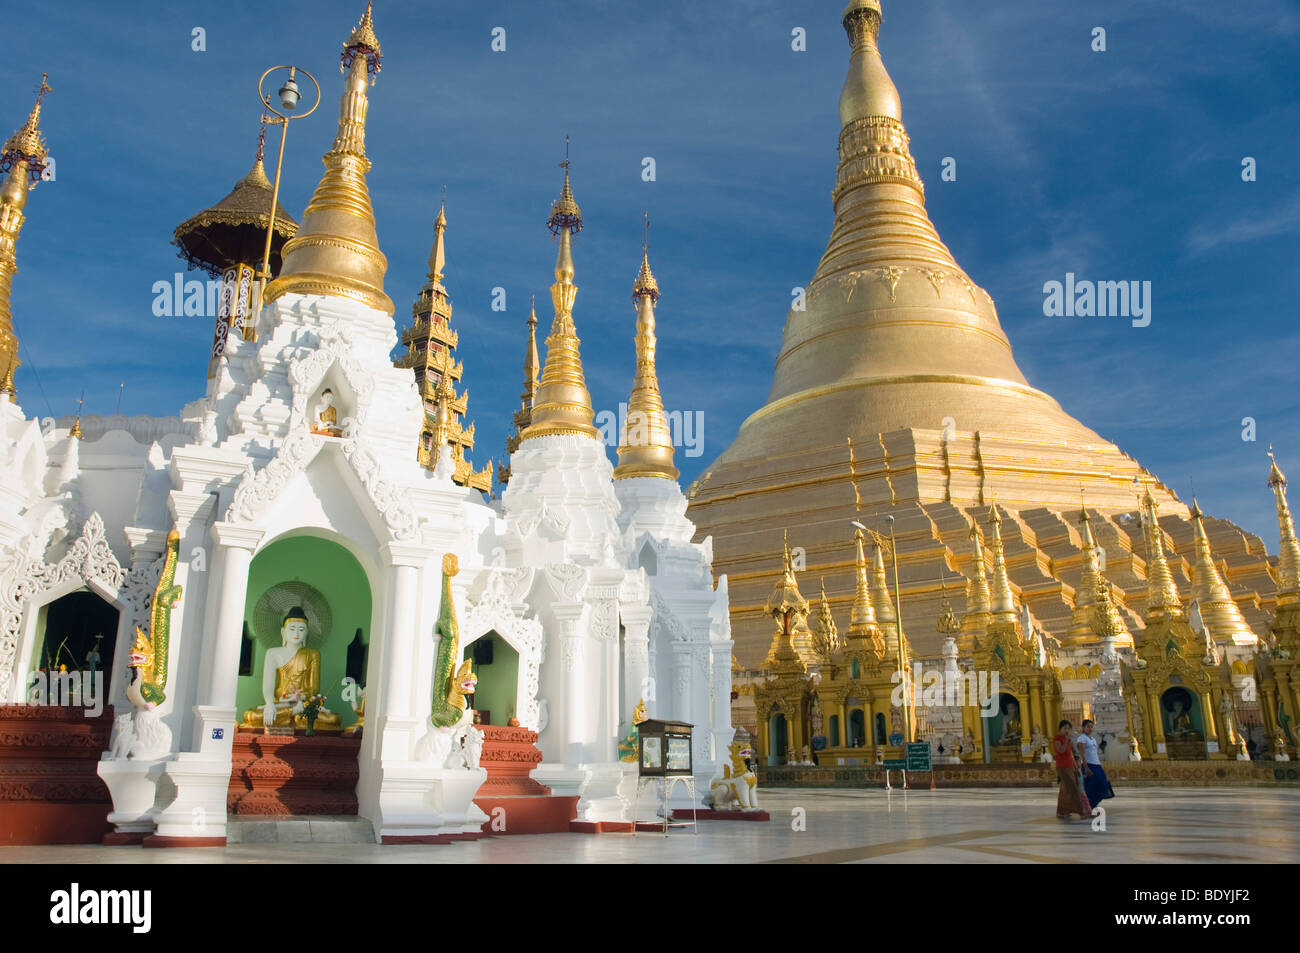 Golden stupa, Shwedagon pagoda, temple, Rangoon, Yangon, Burma, Myanmar, Asia Stock Photo